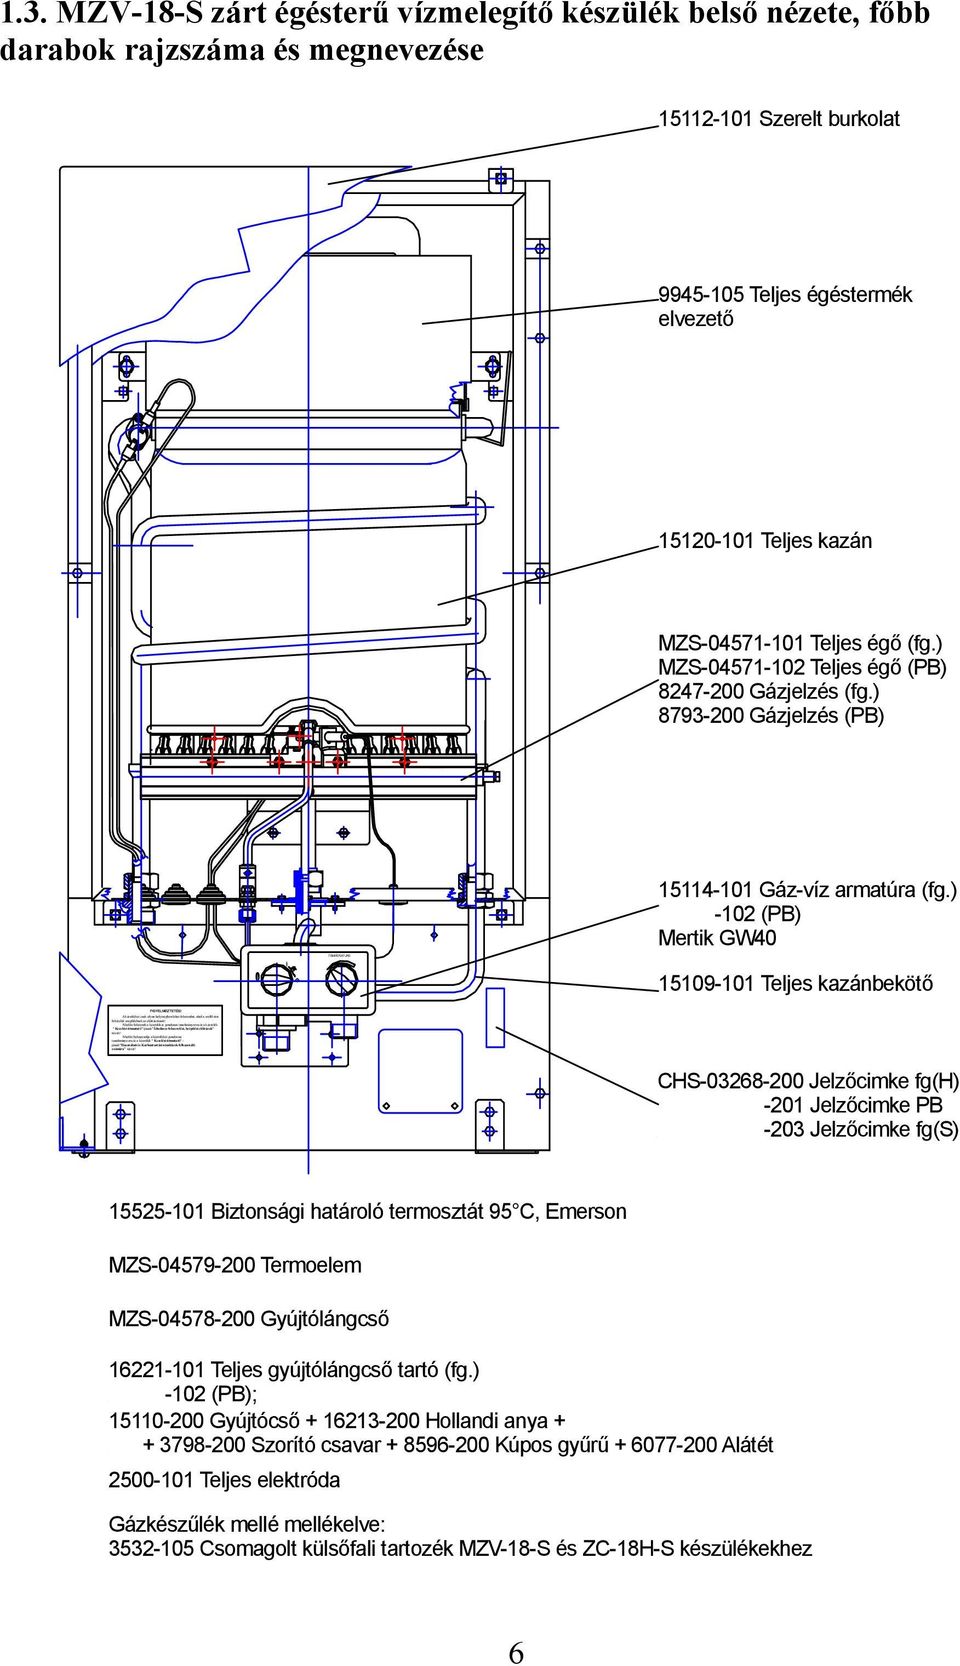 KEZELÉSI ÚTMUTATÓ. MZV-18-S típusú, zárt égésterű, átfolyórendszerű,  használati vízmelegítőhöz. NOVUM-FÉG Fűtéstechnikai Készülékgyártó Kft. -  PDF Ingyenes letöltés